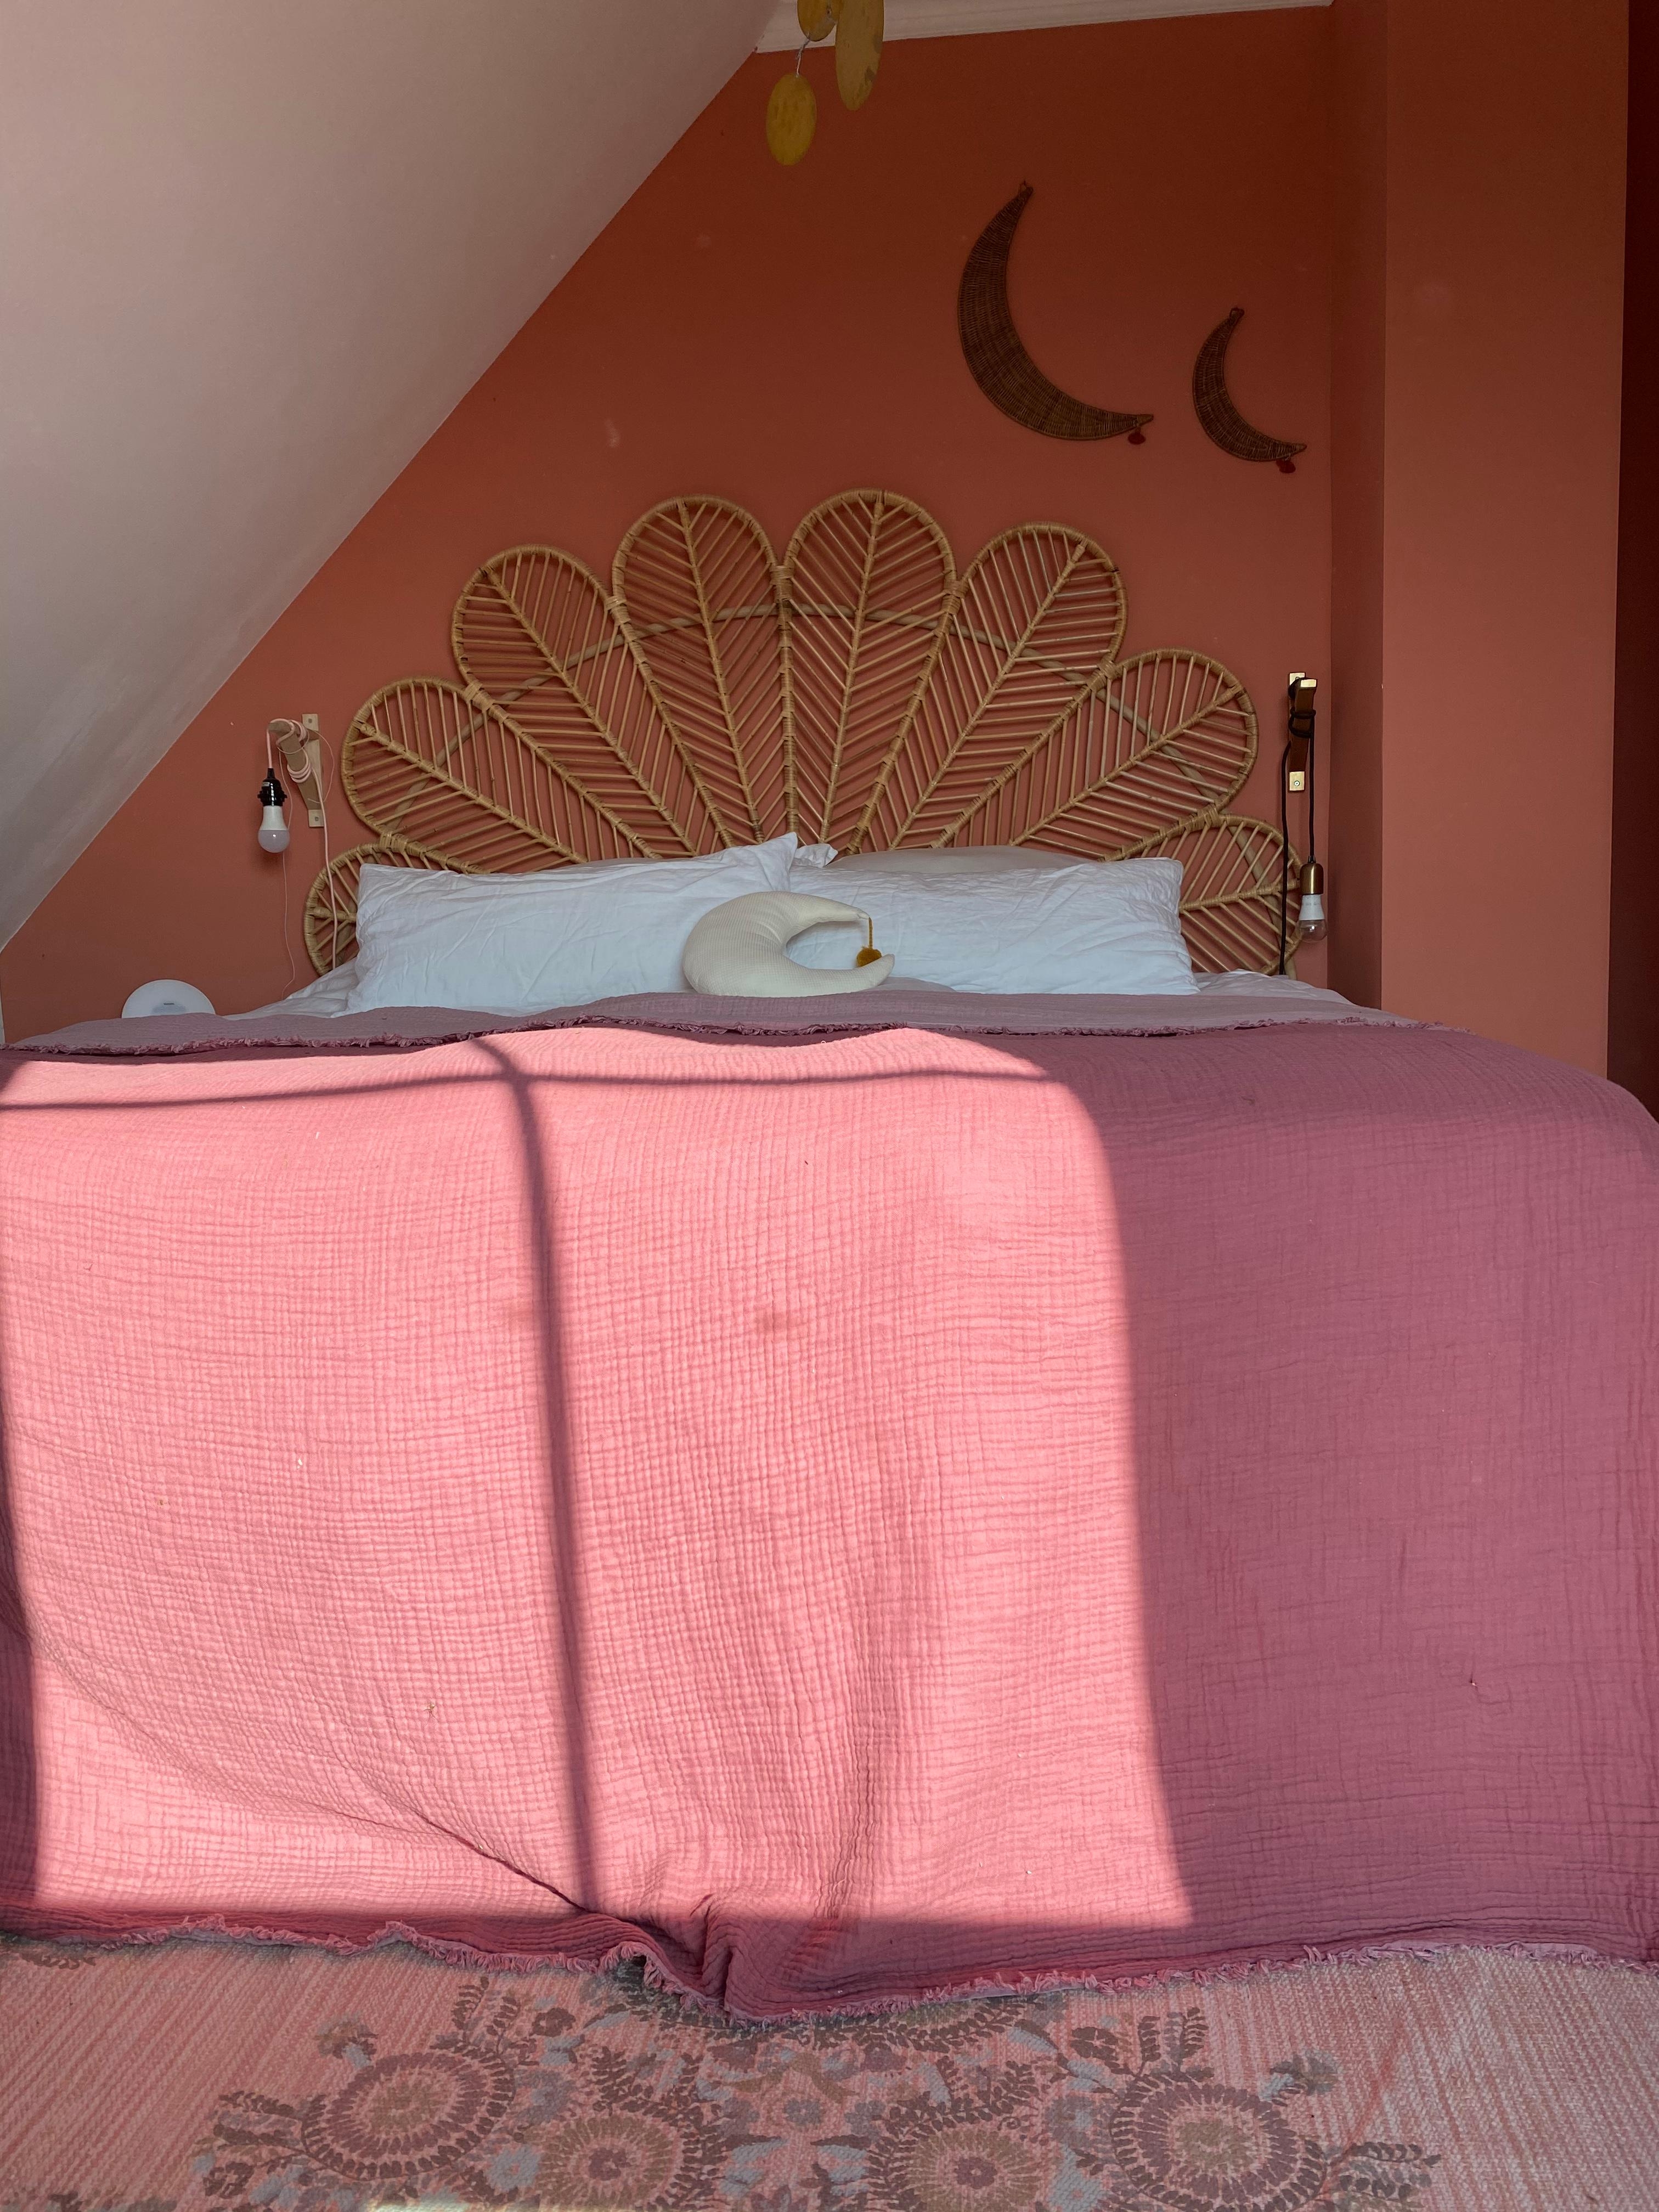 Wieso drehen sich Hochkantfotos hier immer? 🙈
#bedroom #schlafzimmer #couchstyle